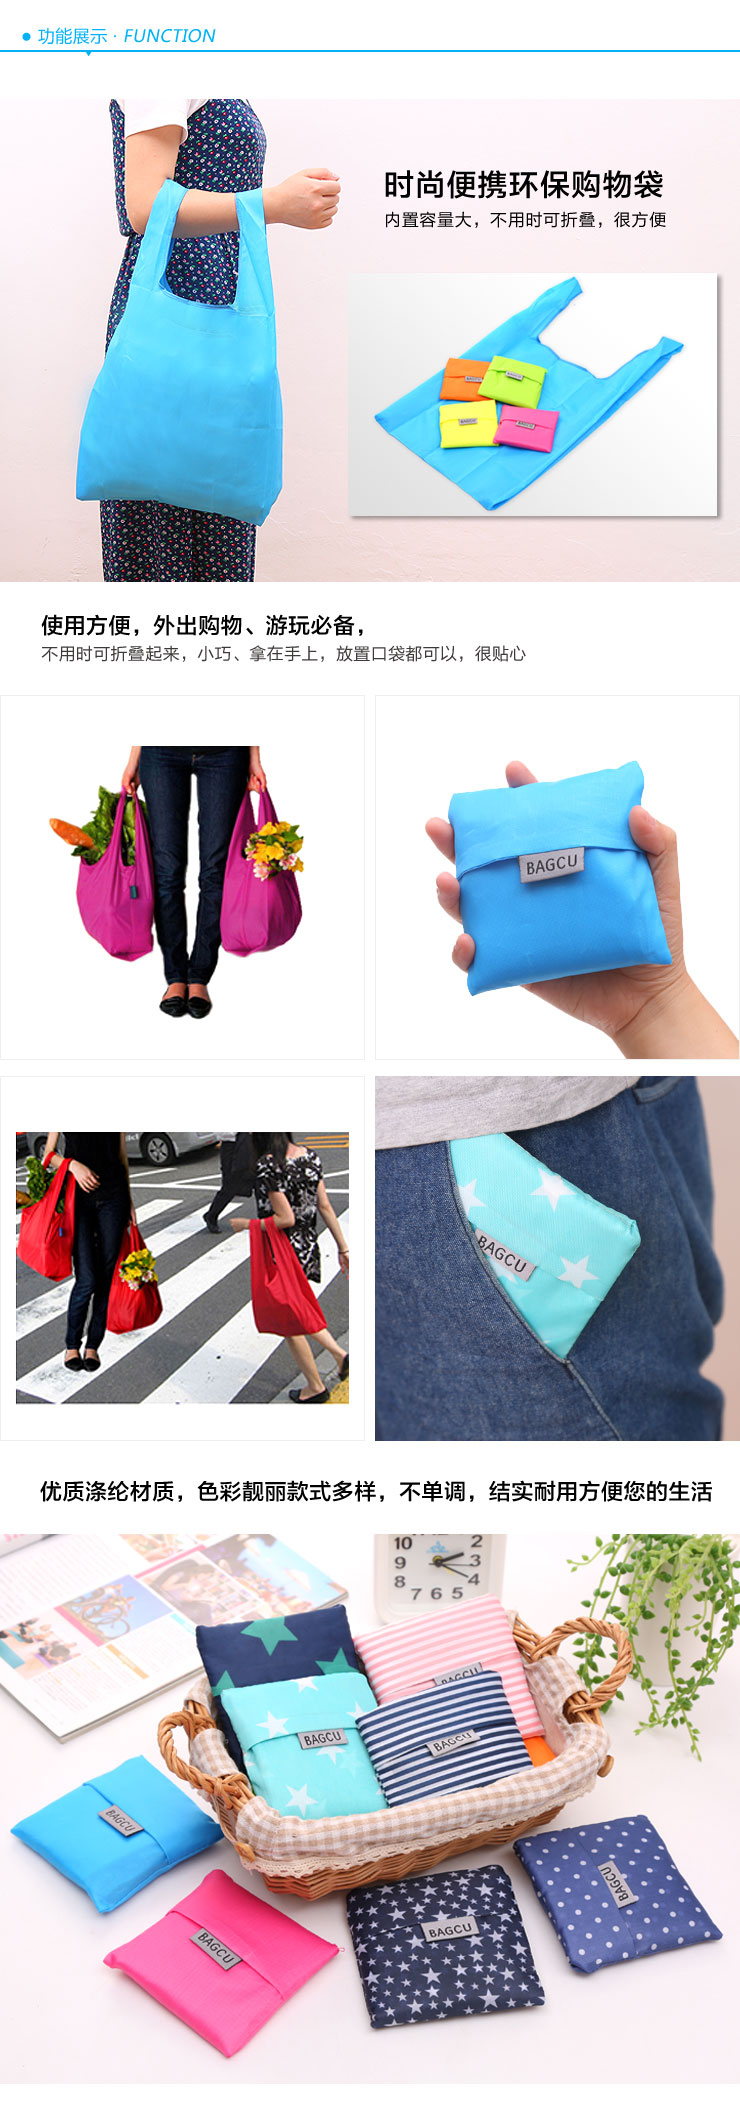 时尚可折叠环保购物袋 尼龙收纳袋环保袋 印花手提袋定制